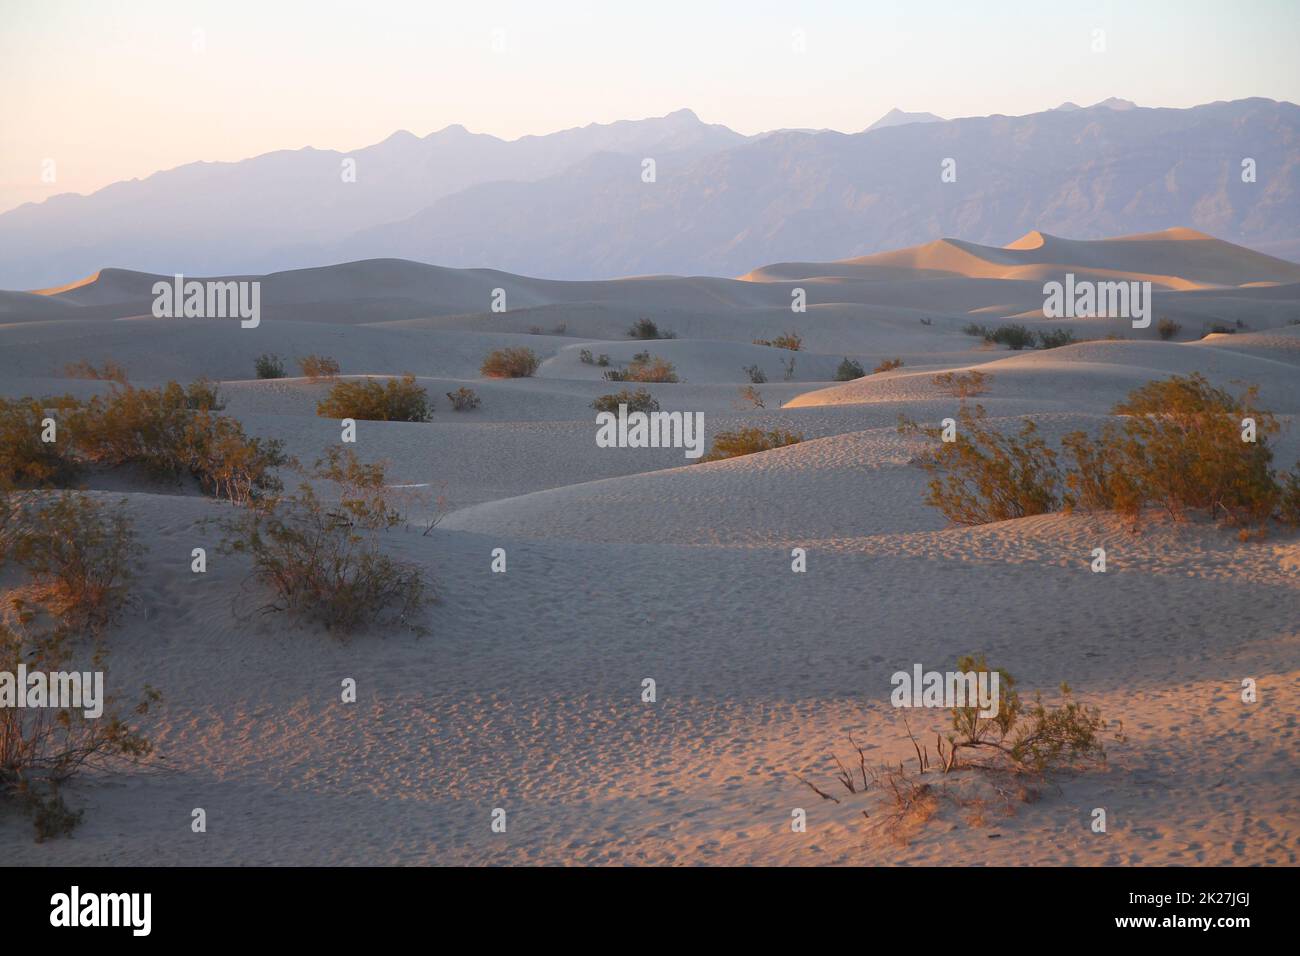 Mesquite Flat Dunes avec les montagnes à l'arrière pendant un coucher de soleil rose dans le désert de la Vallée de la mort Banque D'Images